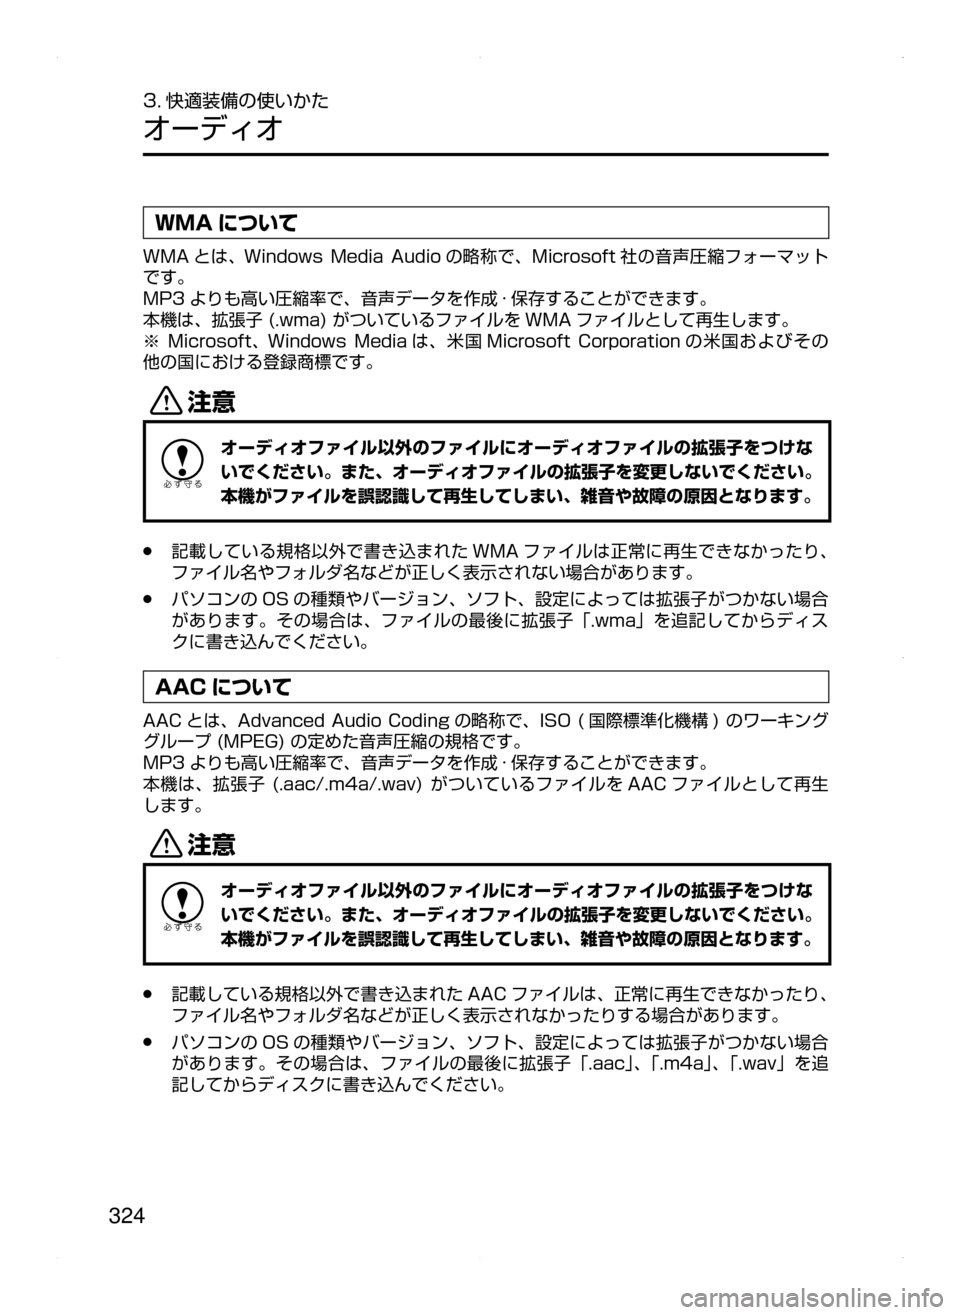 MAZDA MODEL CX-5 2015  取扱説明書 (in Japanese) 324
3. 快適装備の使いかた
オーディオ
WMA について
WMA とは､﻿﻿Windows﻿﻿Media ﻿﻿Audio の略称で､ Microsoft 社の音声圧縮フォーマット
です。
MP3 よ�